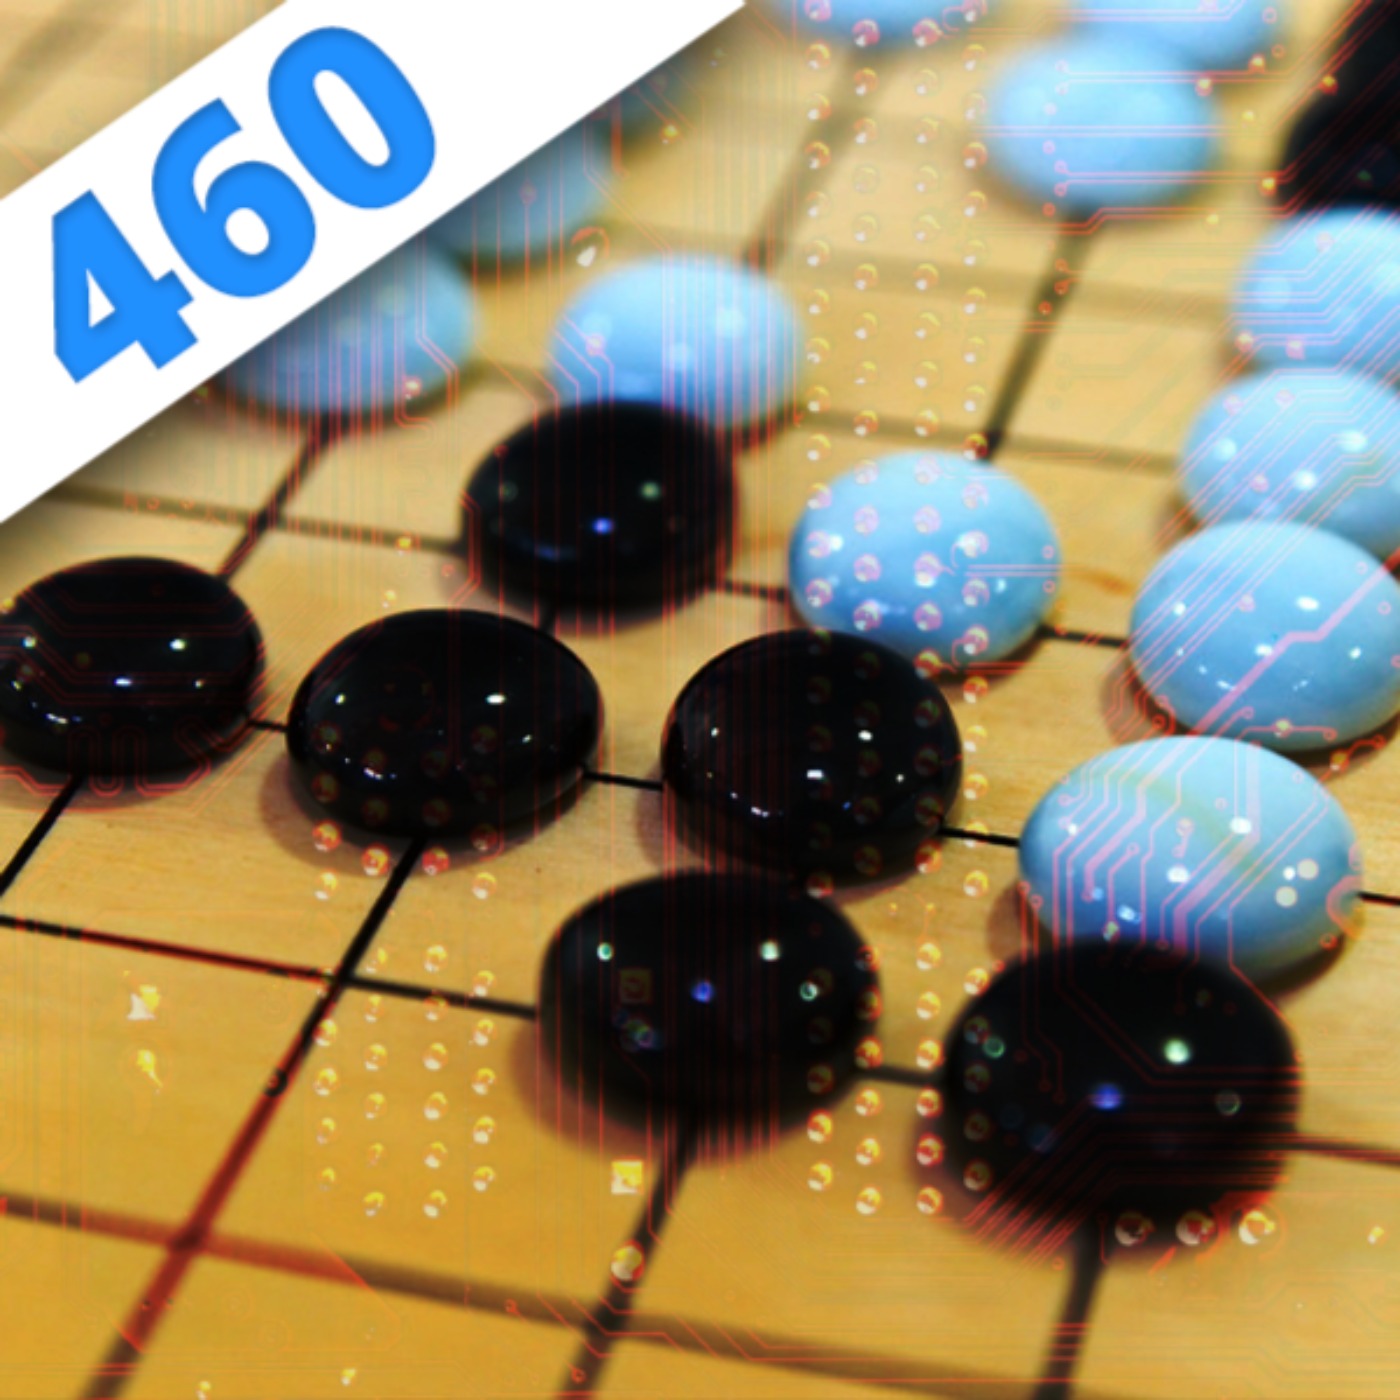 460 - Alpha Go : l’algo qui bat l’ego